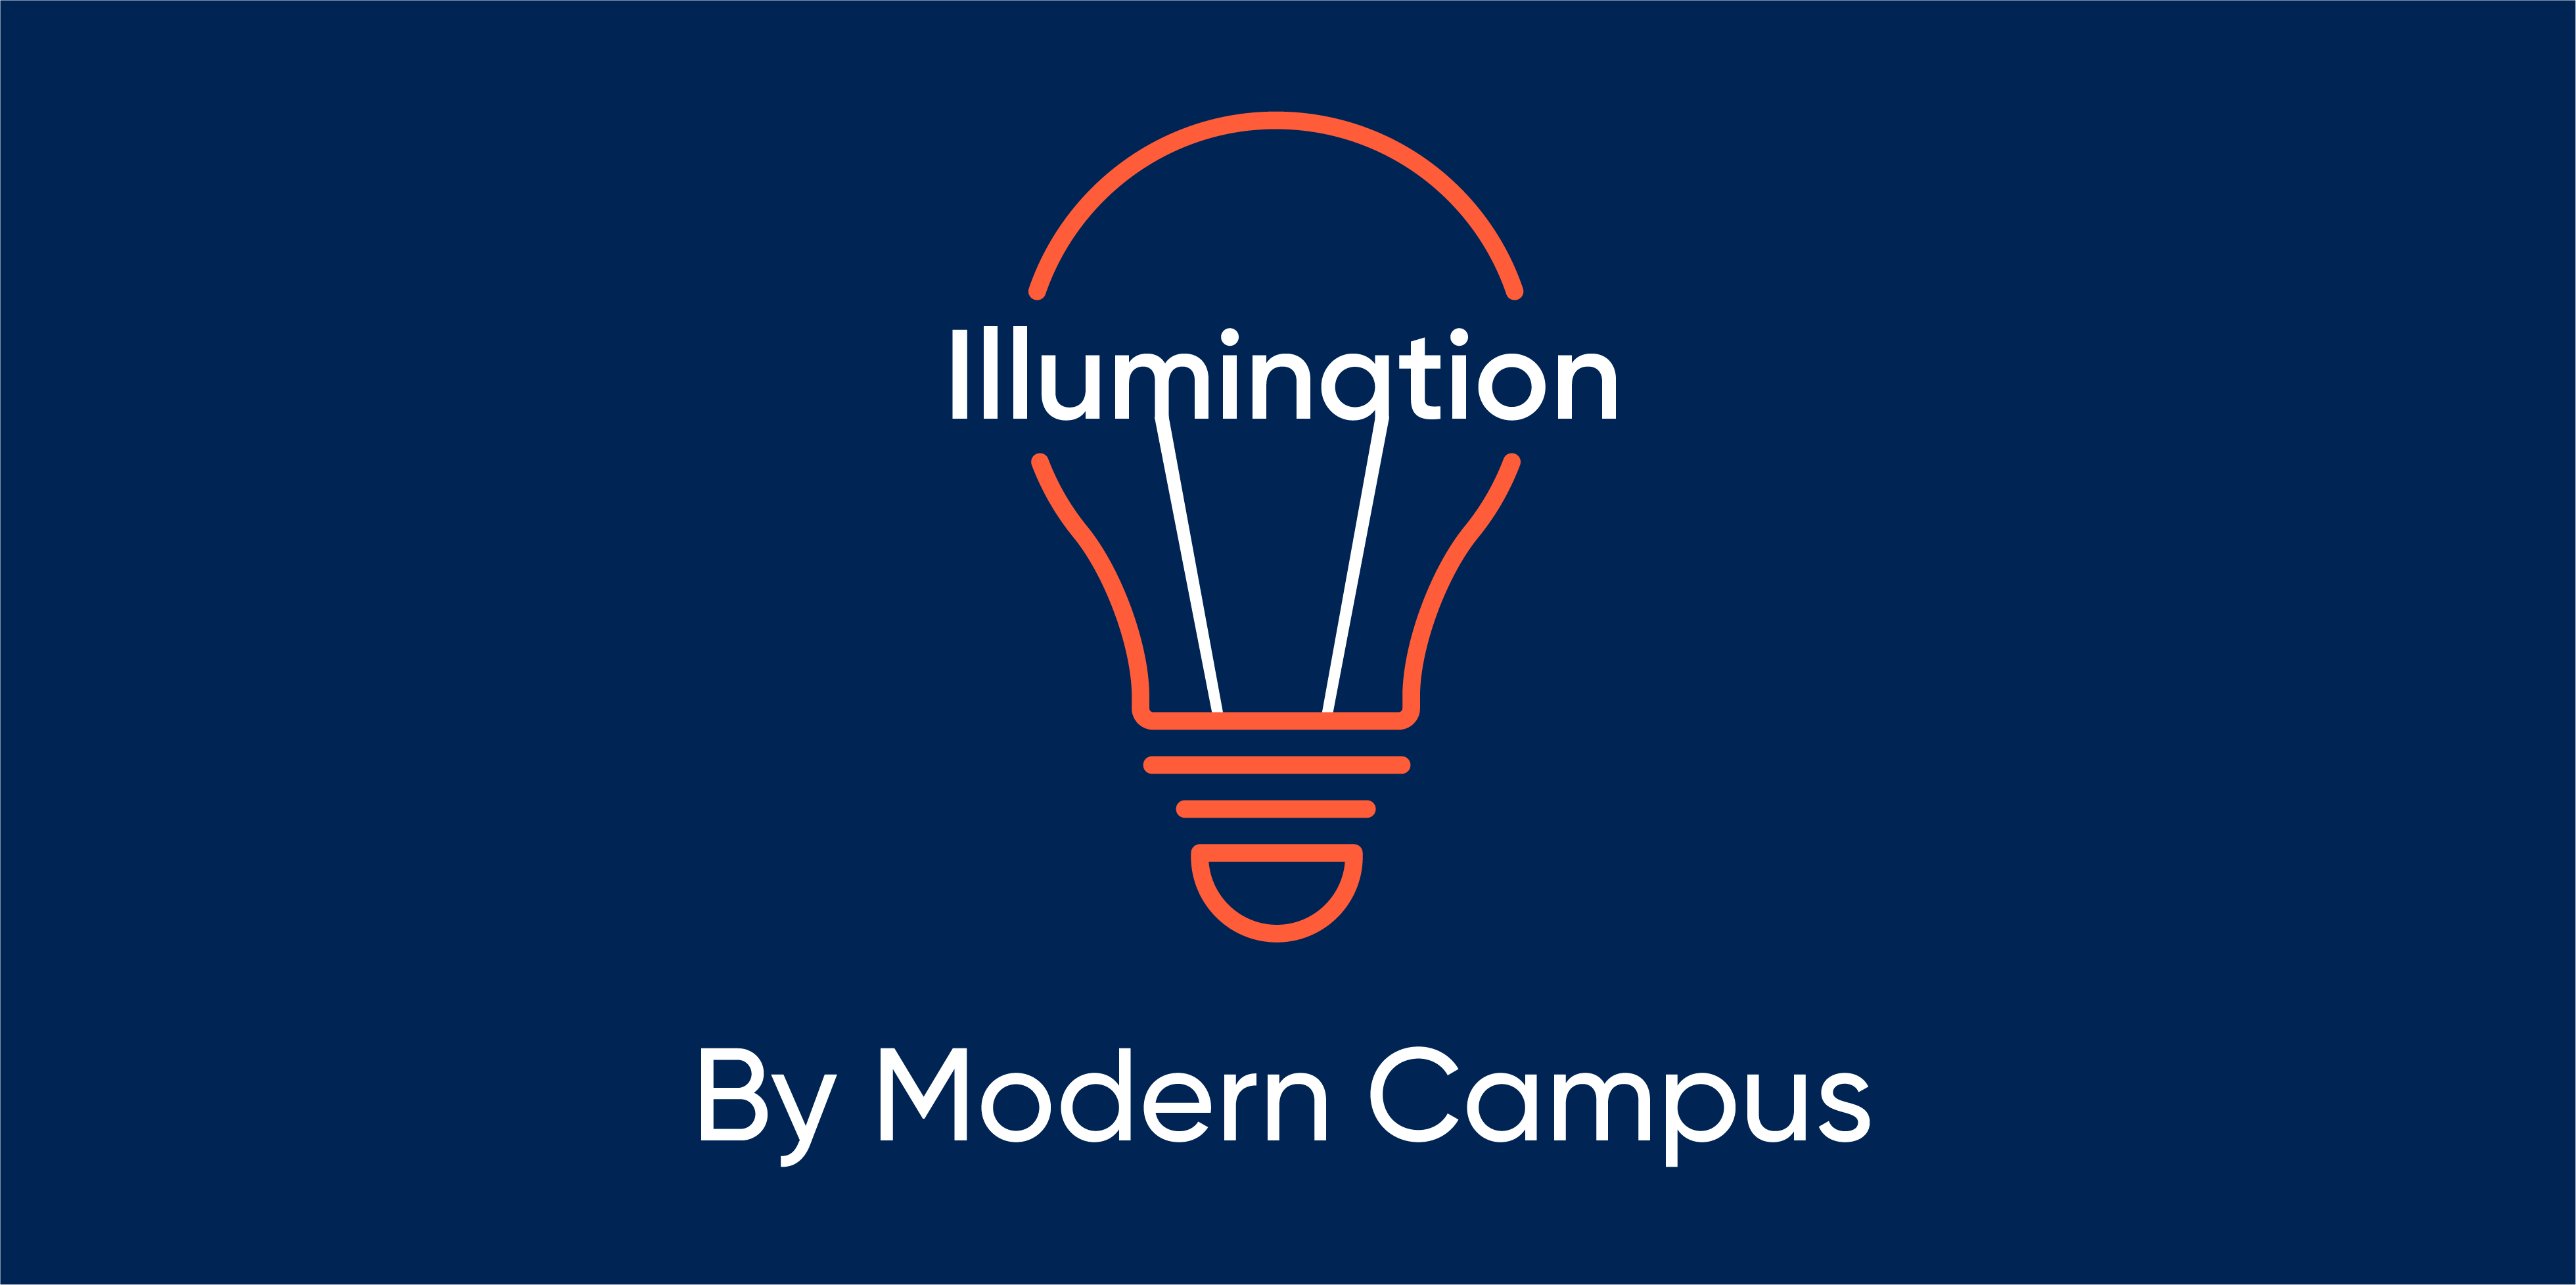 Episode 119: Illumination by Modern Campus